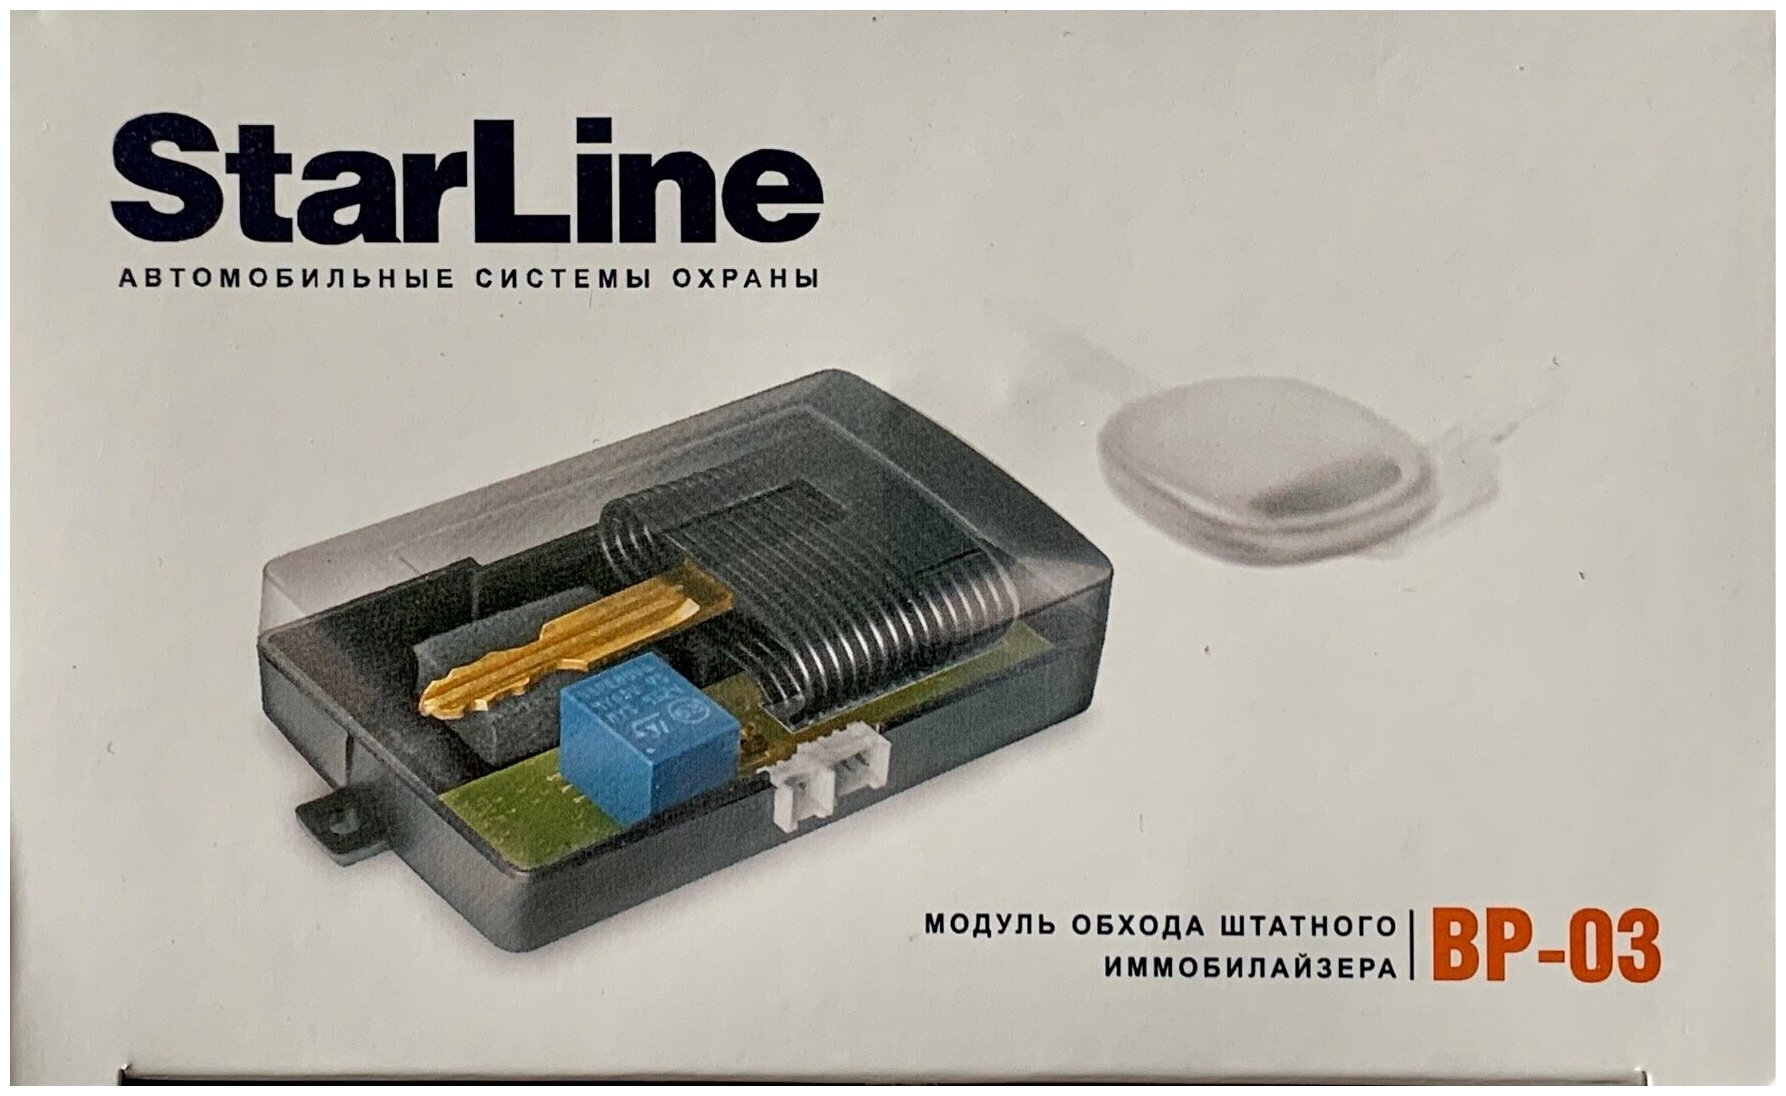 Модуль временного отключения штатного иммобилизатора StarLine ВР-03